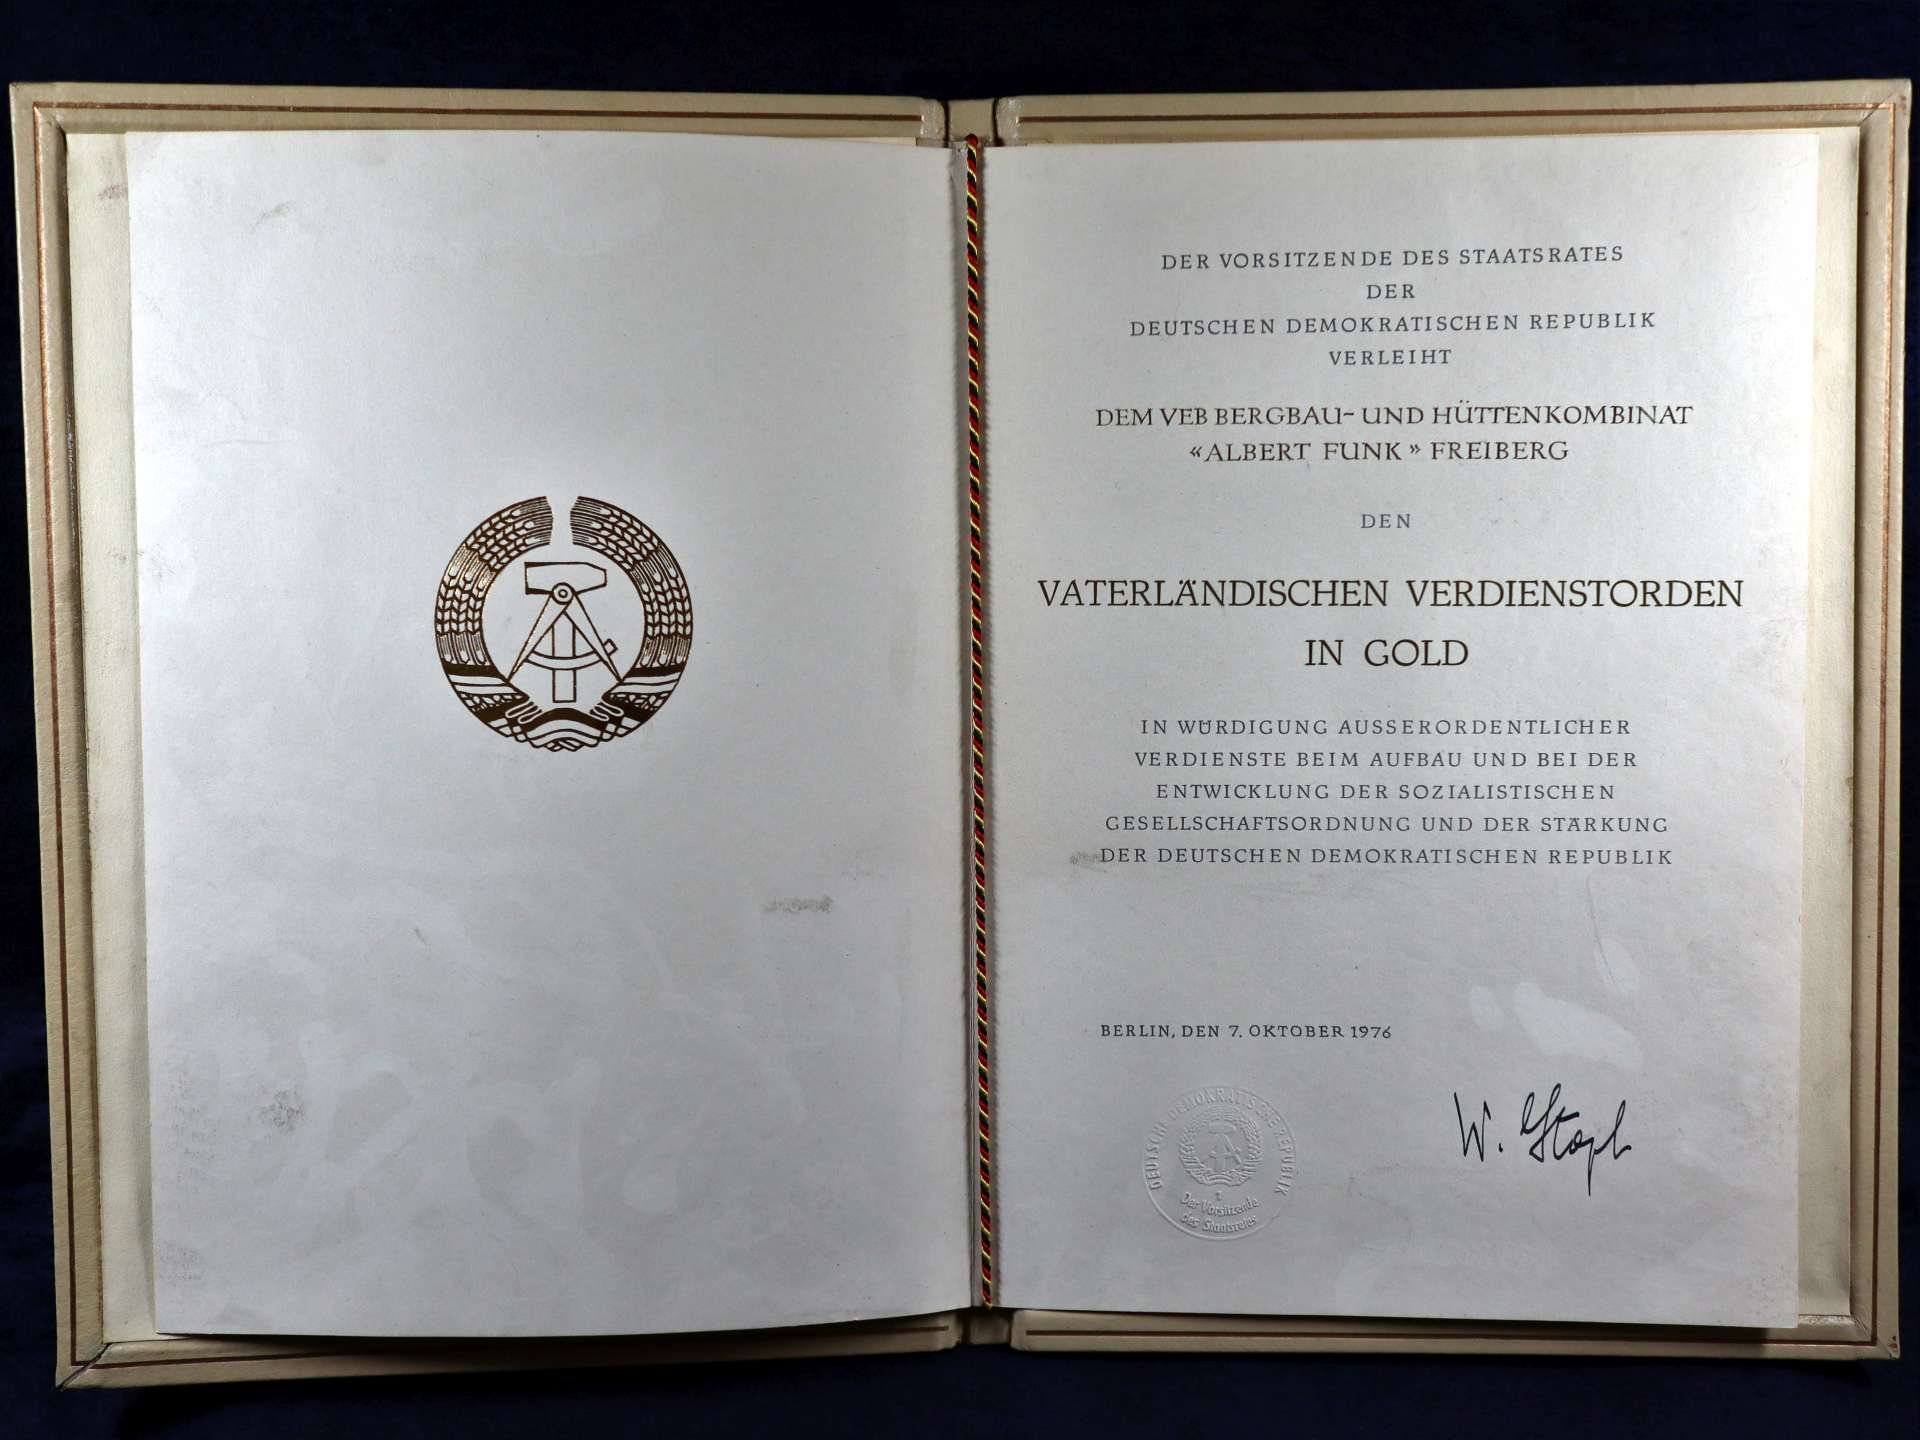 Verleihung des Vaterländischen Verdienstordens in Gold an das VEB Bergbau- und Hüttenkombinat "Albert Funk" Freiberg (Saxonia-Freiberg-Stiftung CC BY-NC-SA)